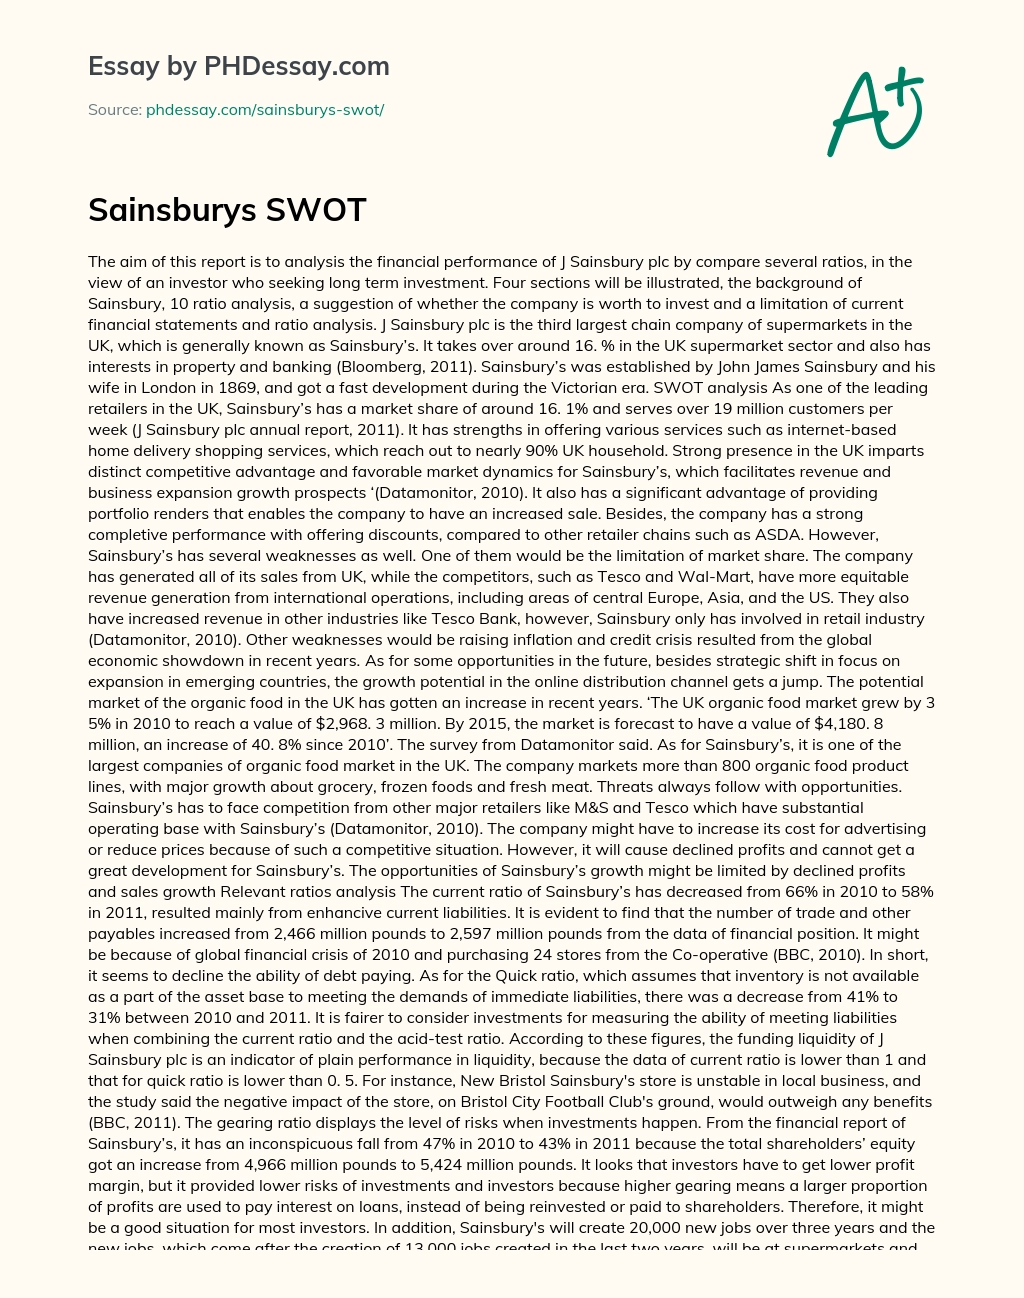 Sainsbury’s SWOT Analysis essay